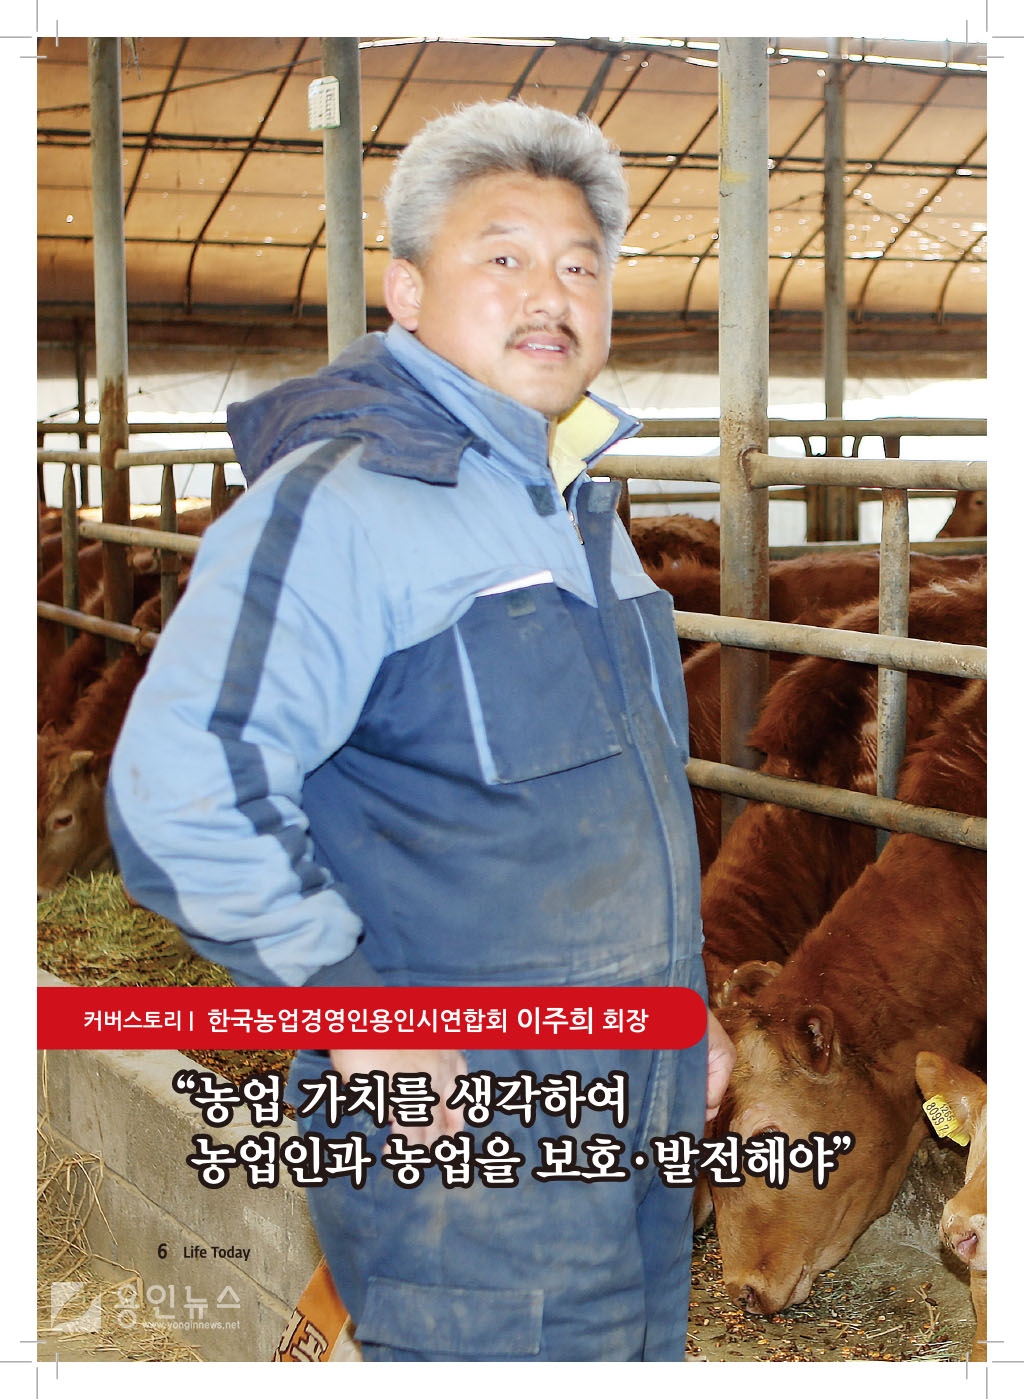 커버스토리-한국농업경영인용인시연합회 이주희 회장 (19년 4월)